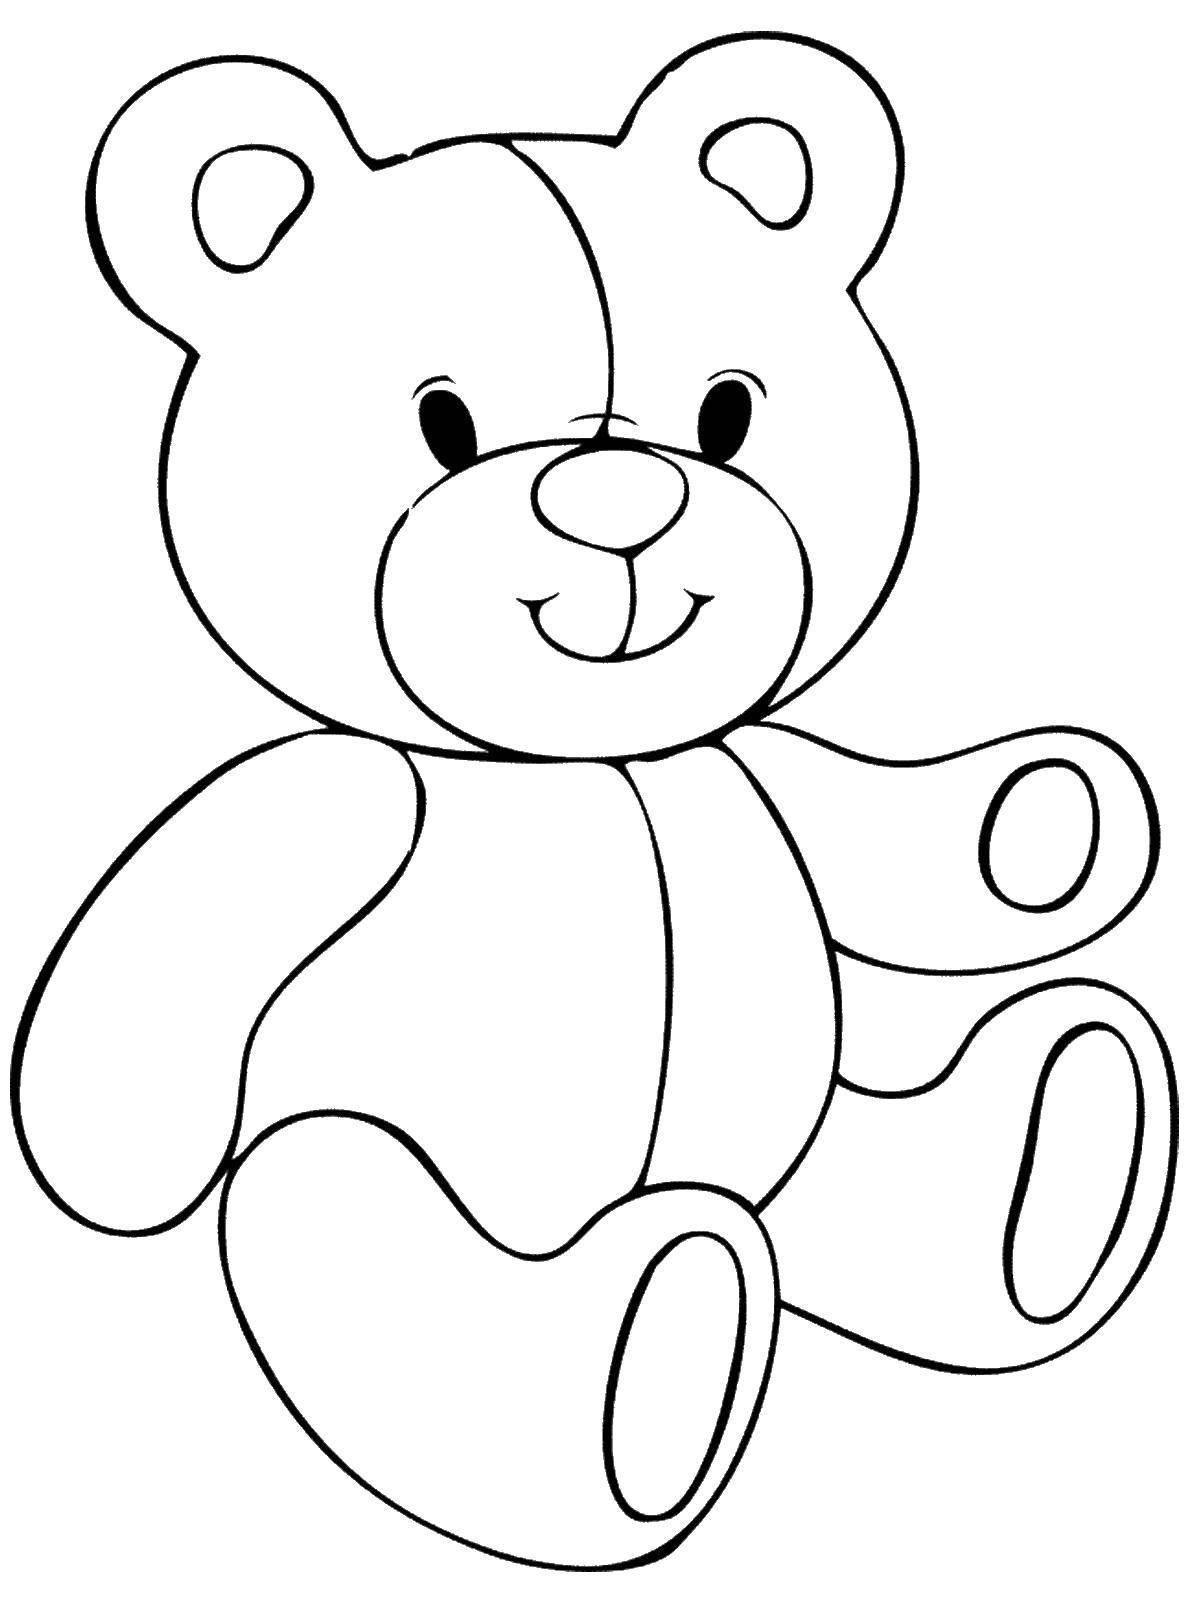 Напечатать игрушки. Раскраска "мишки". Раскраска. Медвежонок. Медвежонок раскраска для детей. Раскраскадл малышей.